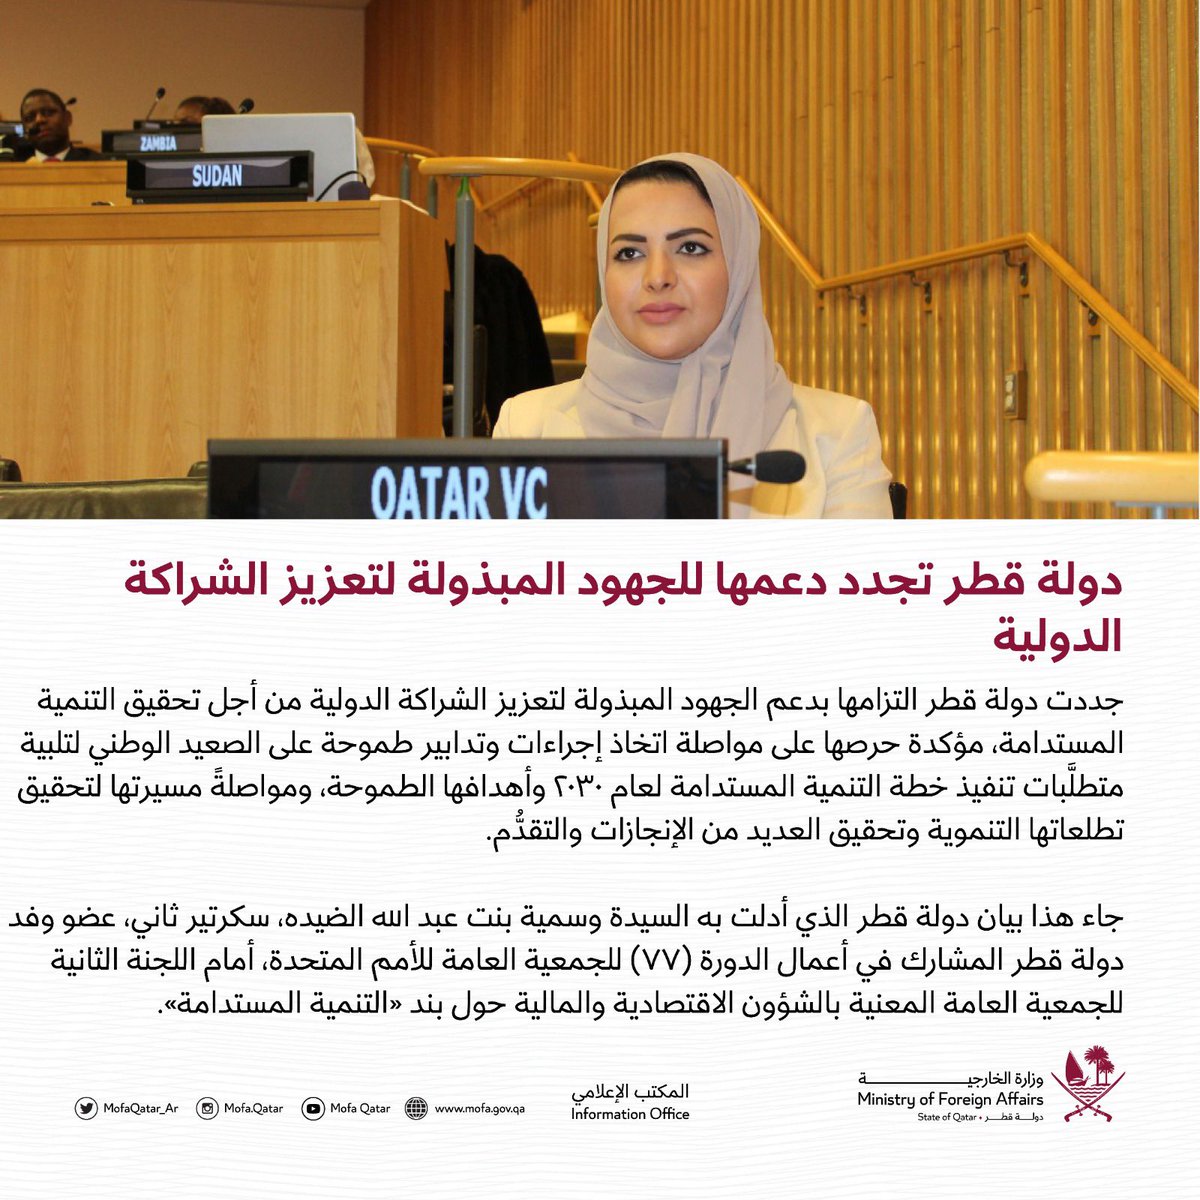 دولة قطر تجدد دعمها للجهود المبذولة لتعزيز الشراكة الدولية 🔗لقراءة المزيد: bit.ly/3RPMtJi #الخارجية_القطرية